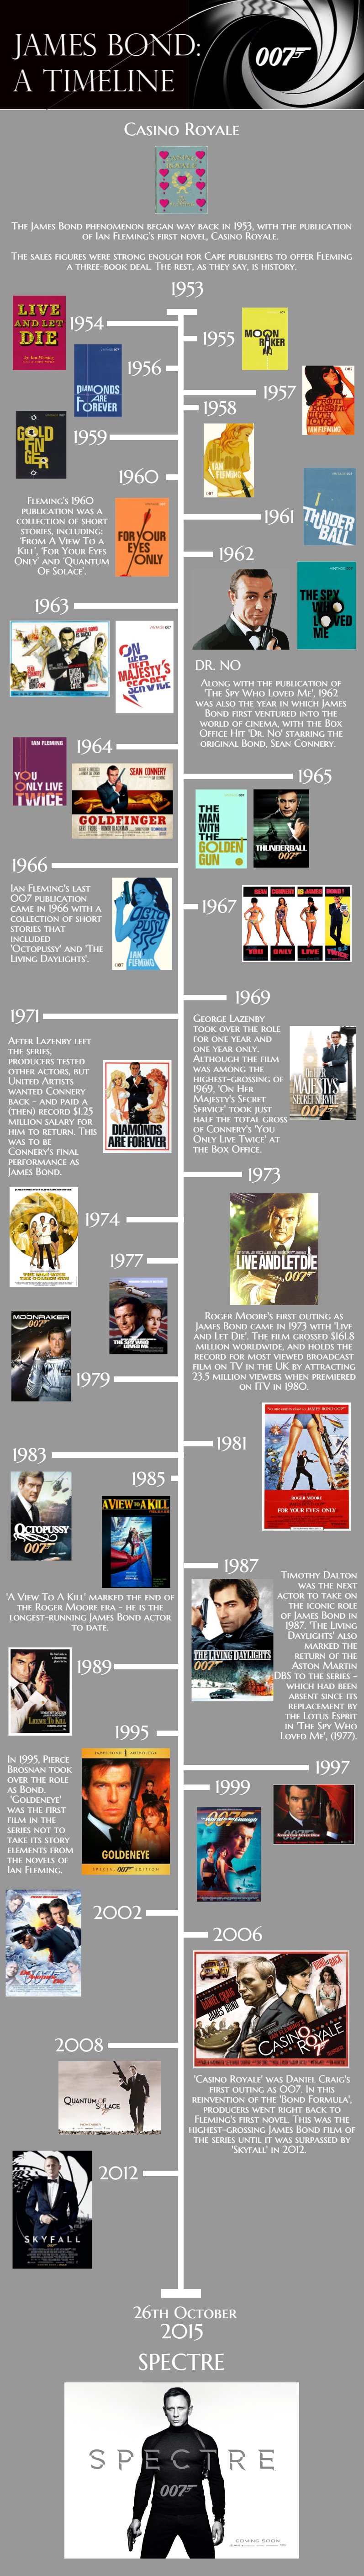 James Bond Timeline